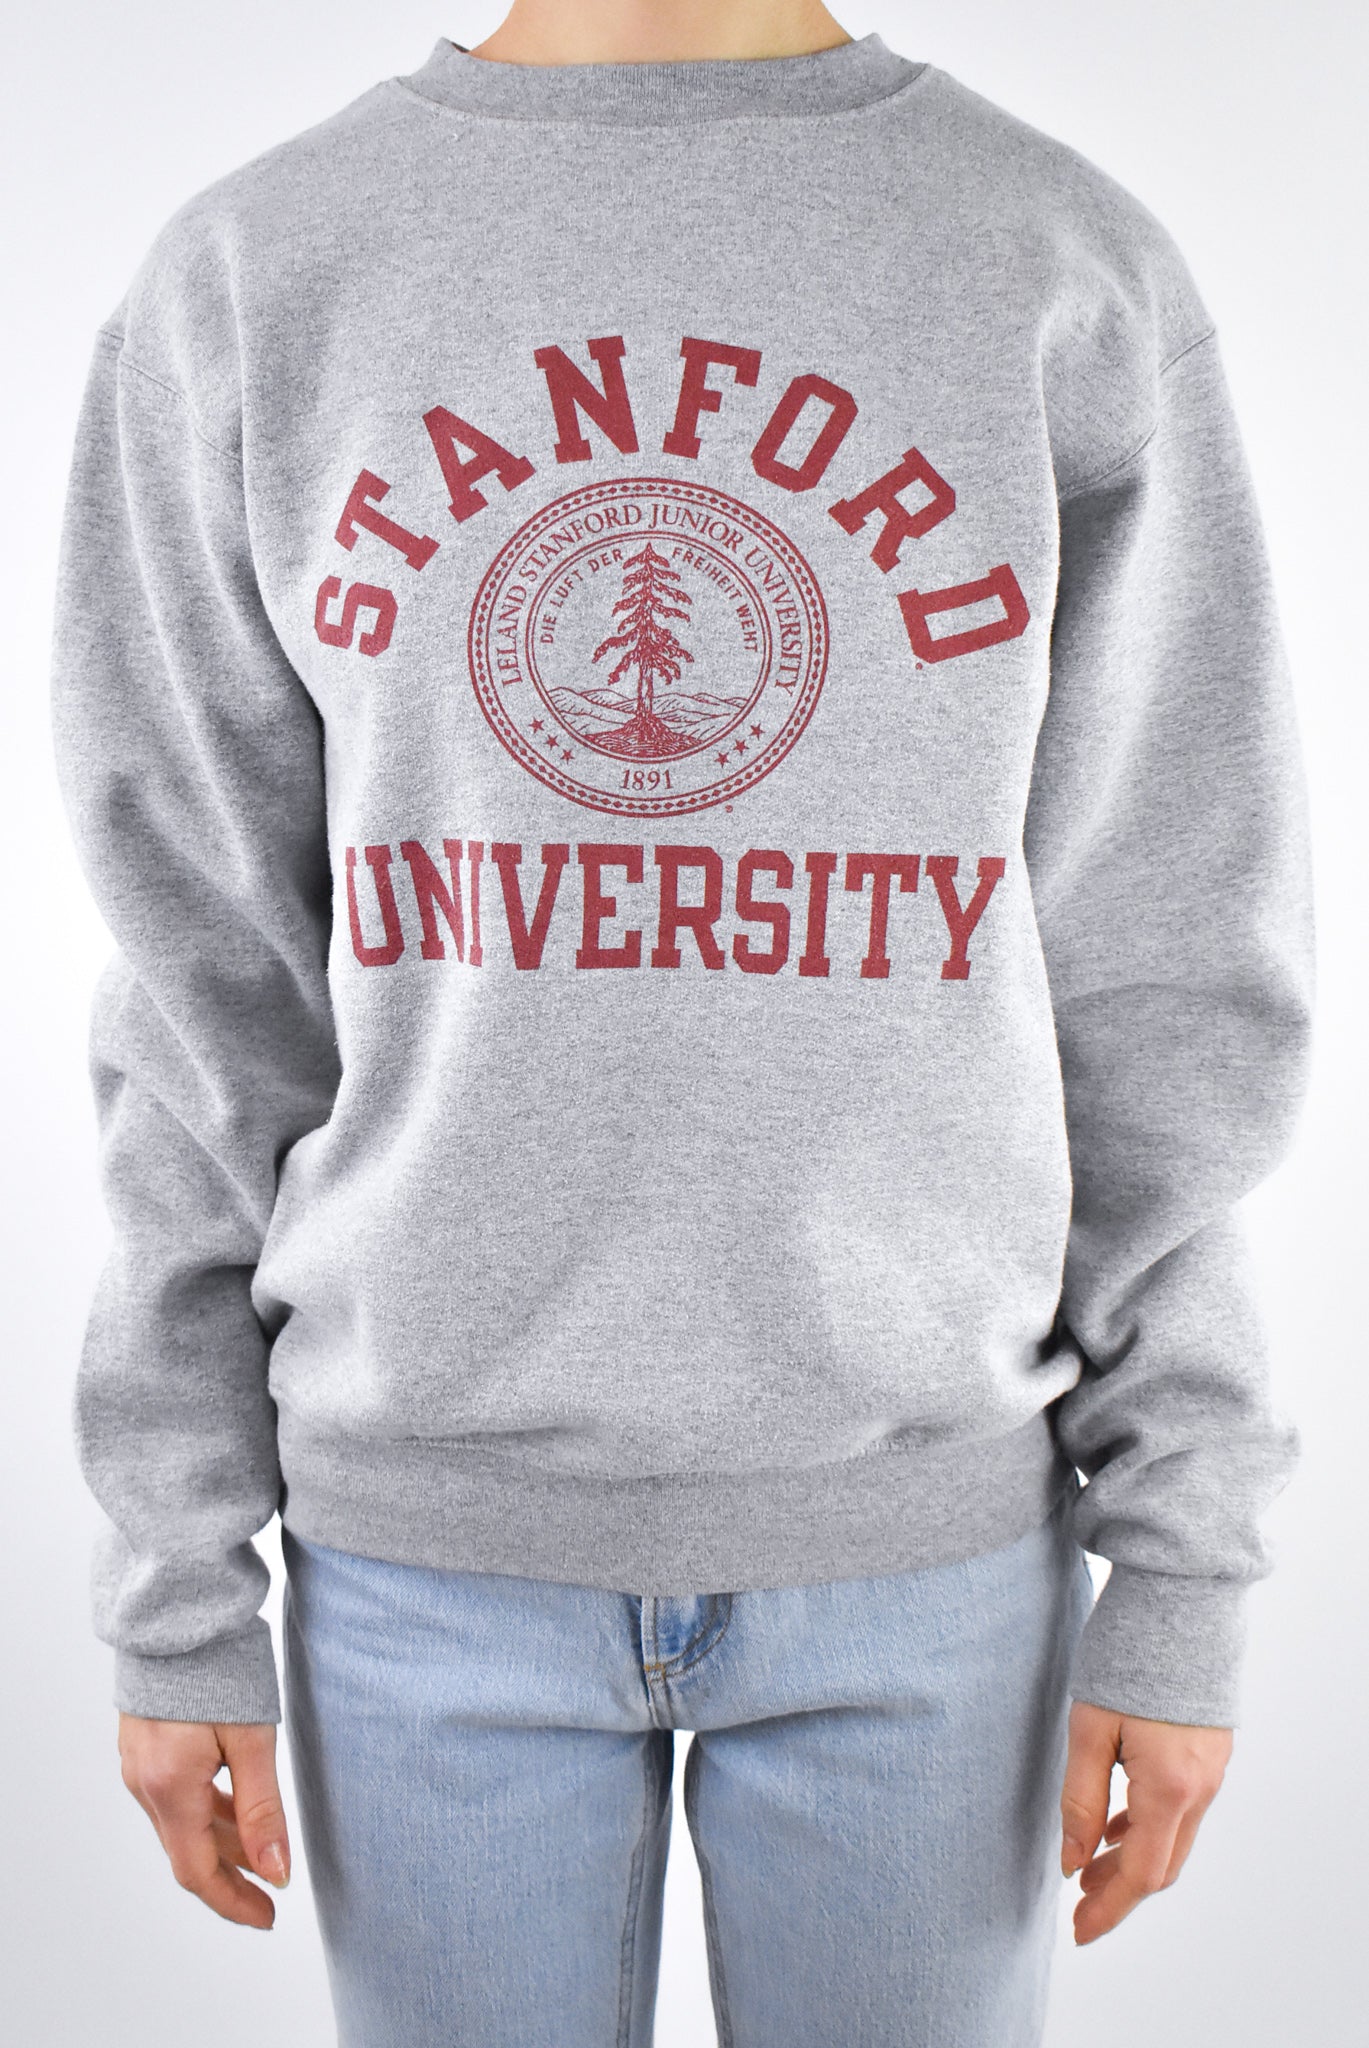 stanford university hoodie